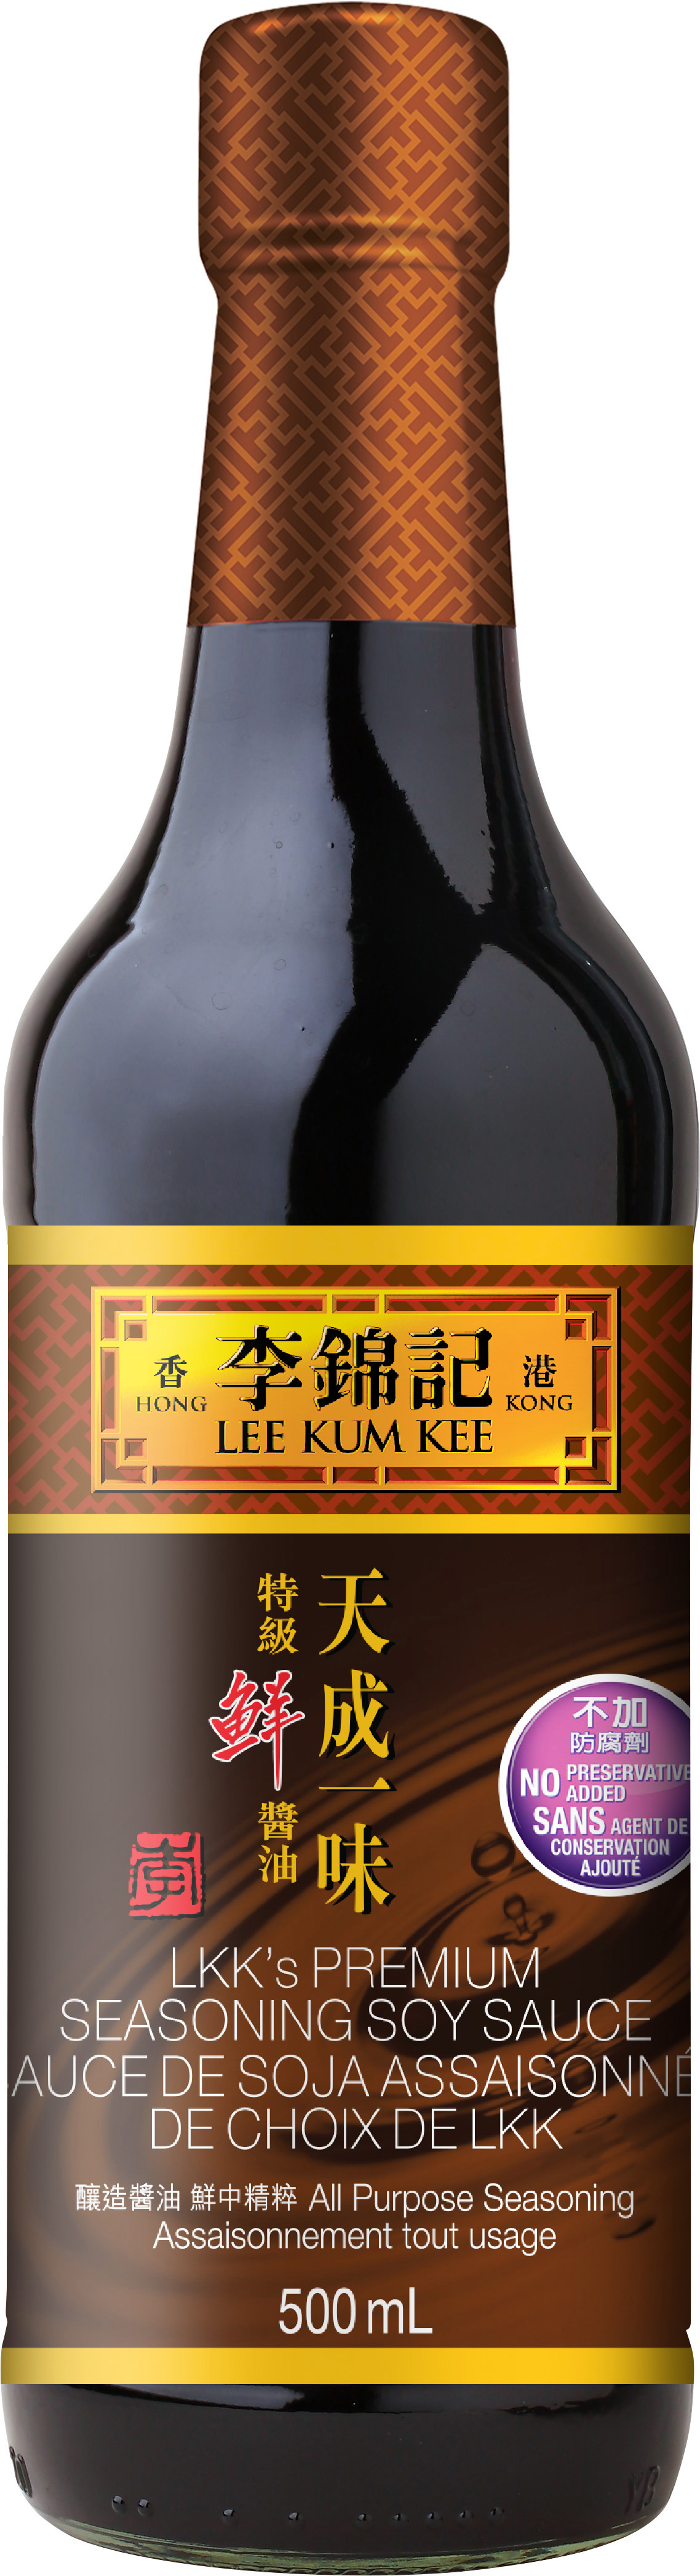 LKK's Premium Seasoning Soy Sauce 500 mL, Bottle